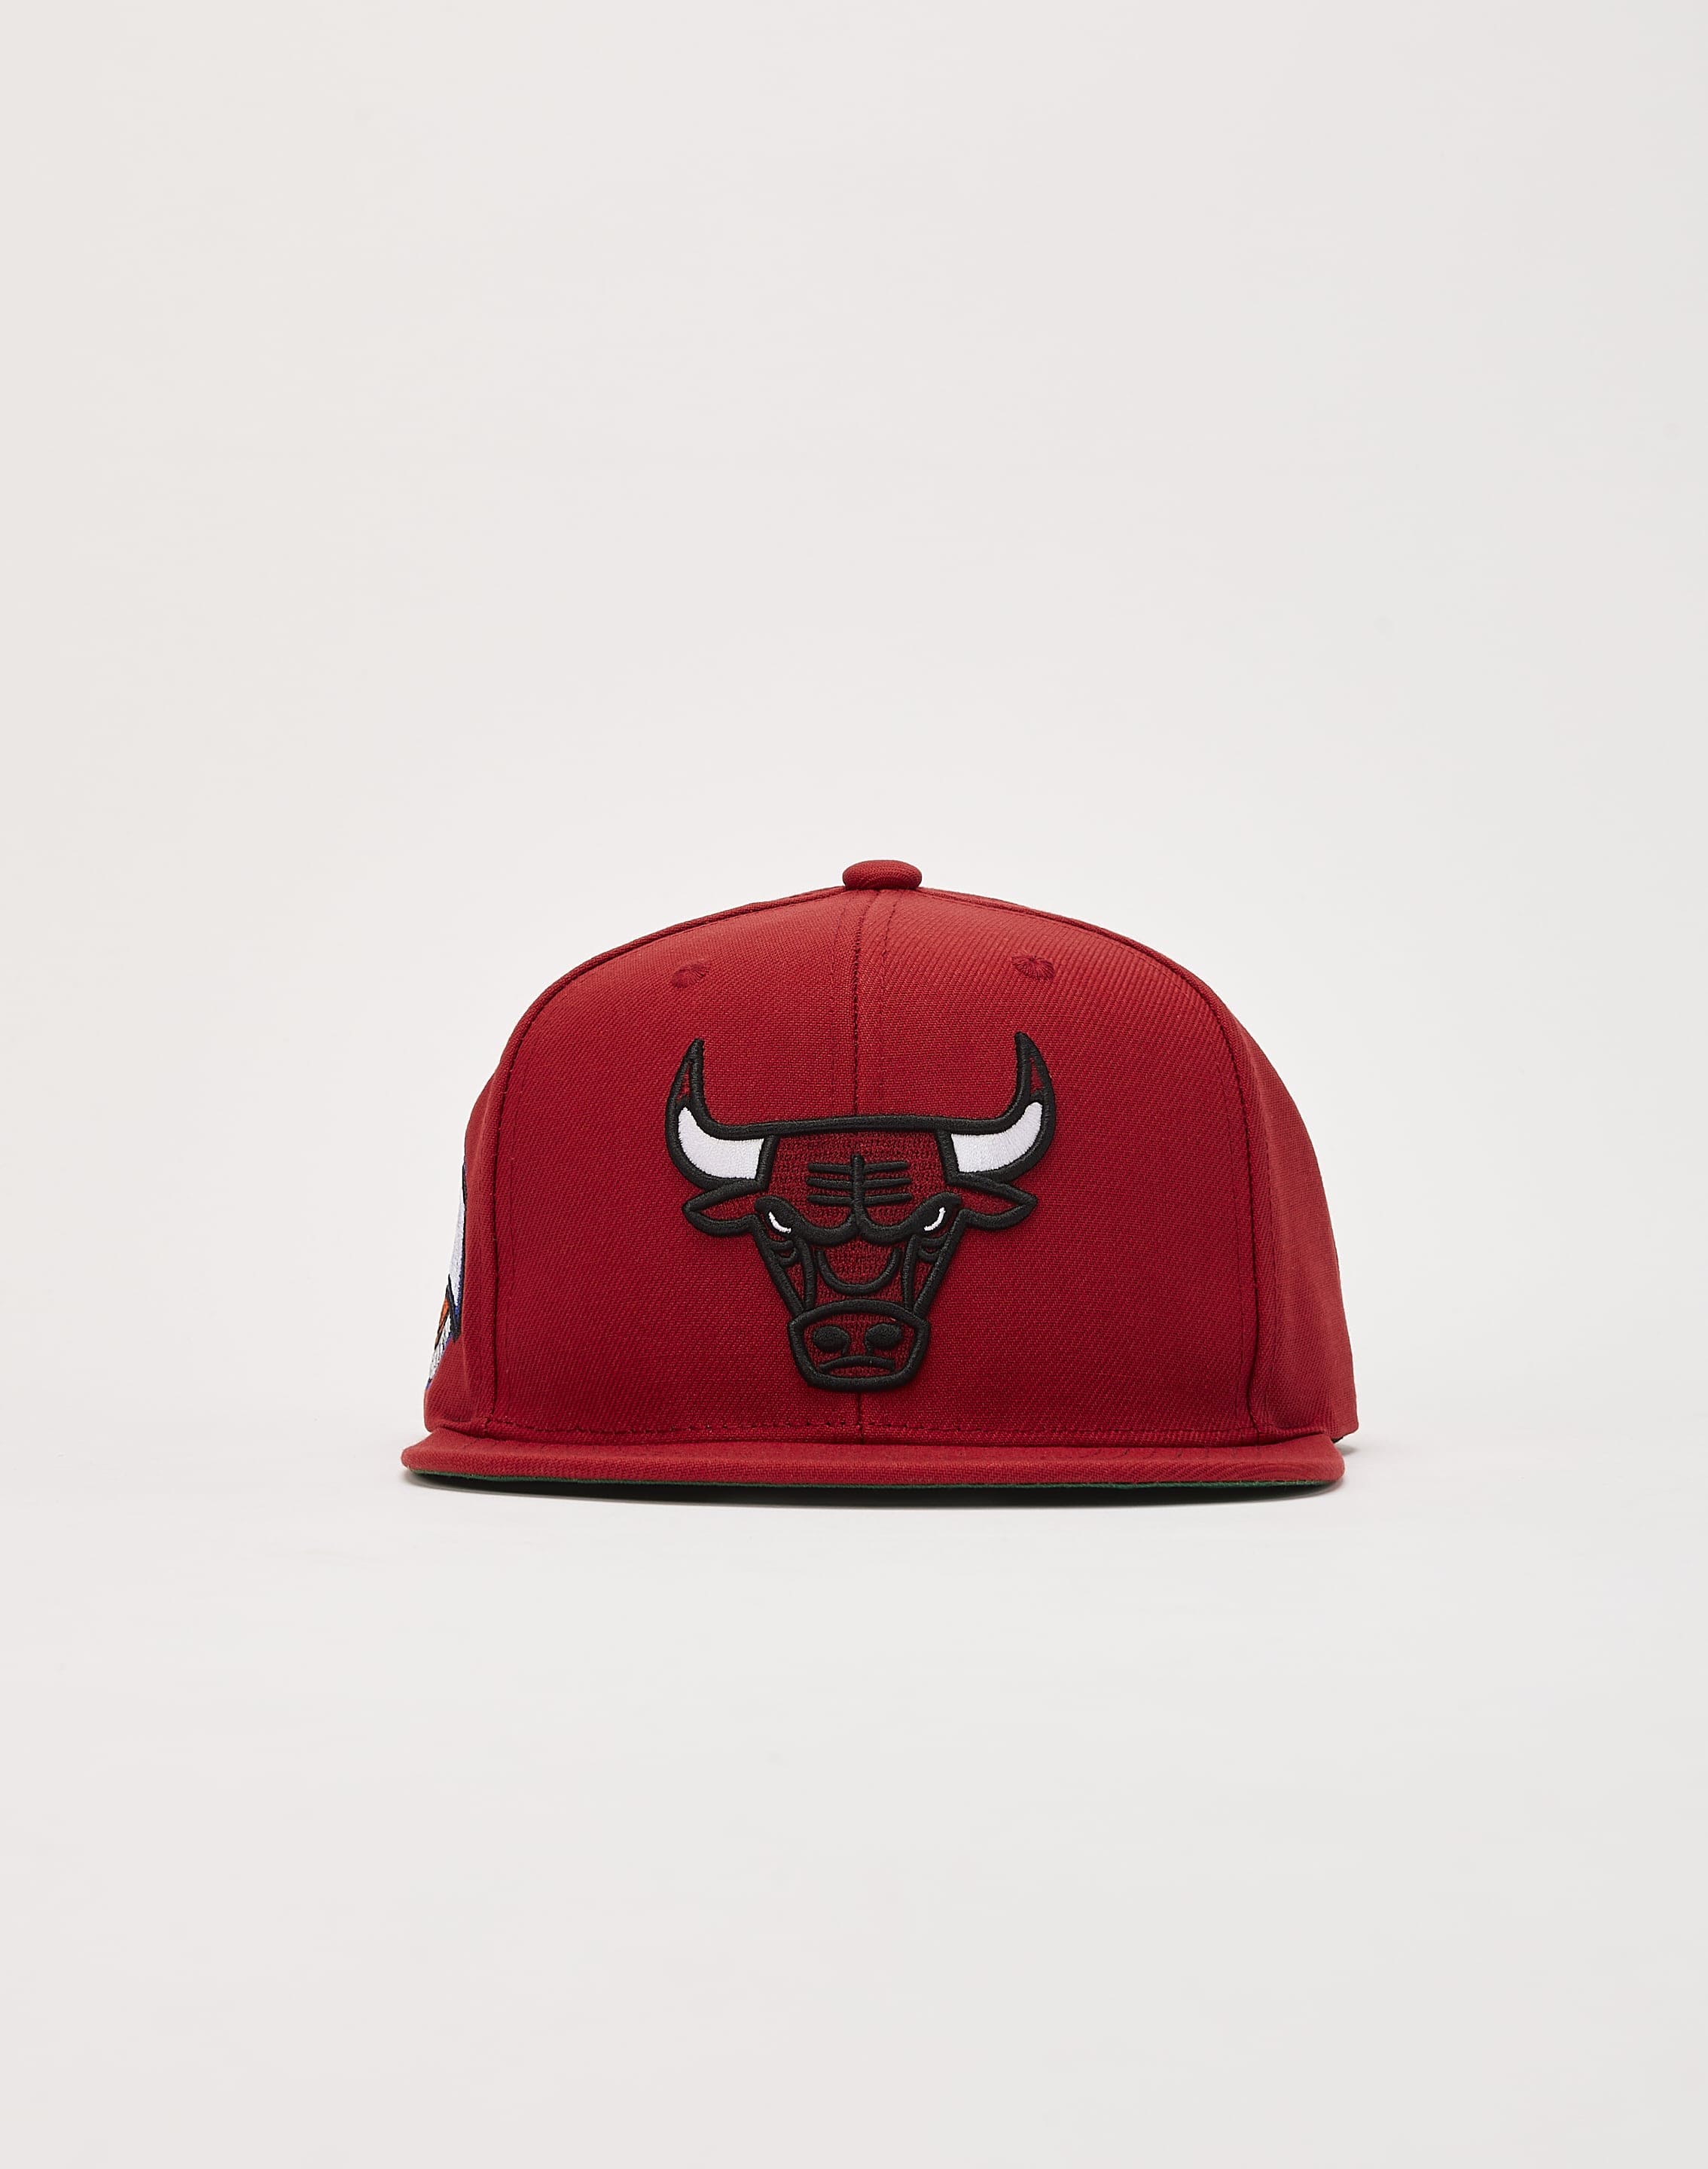 ⭐️ NEW Chicago BULLS Hat Cap SNAPBACK Mitchell & Ness Red RARE White  Bull ⭐️